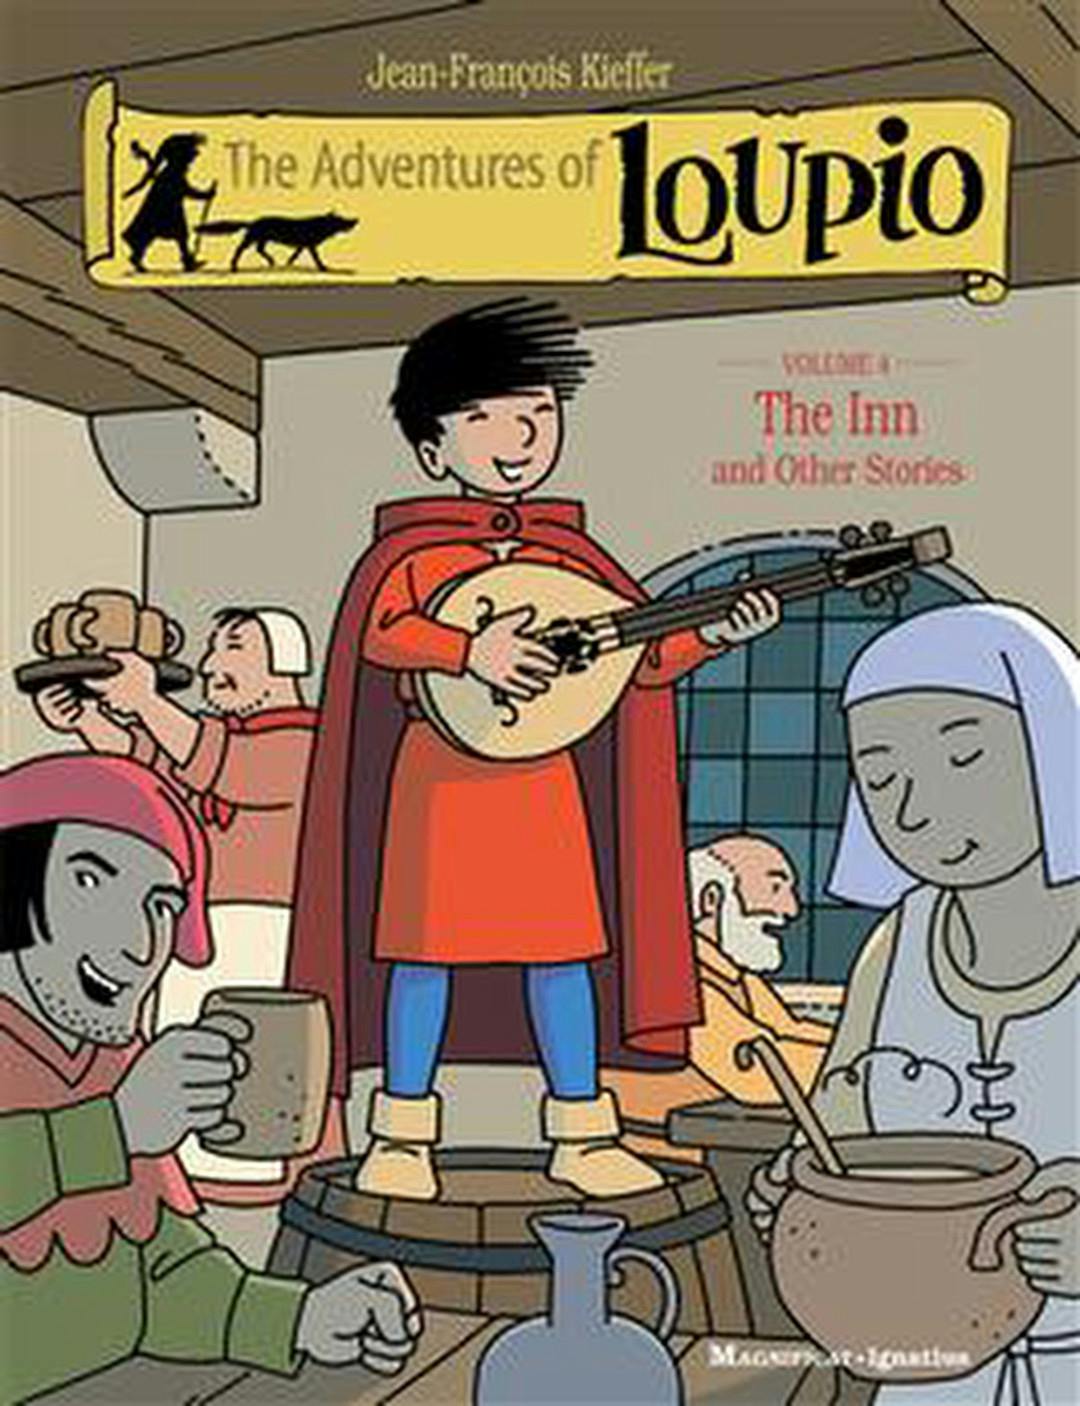 The Adventures of Loupio Volume 4